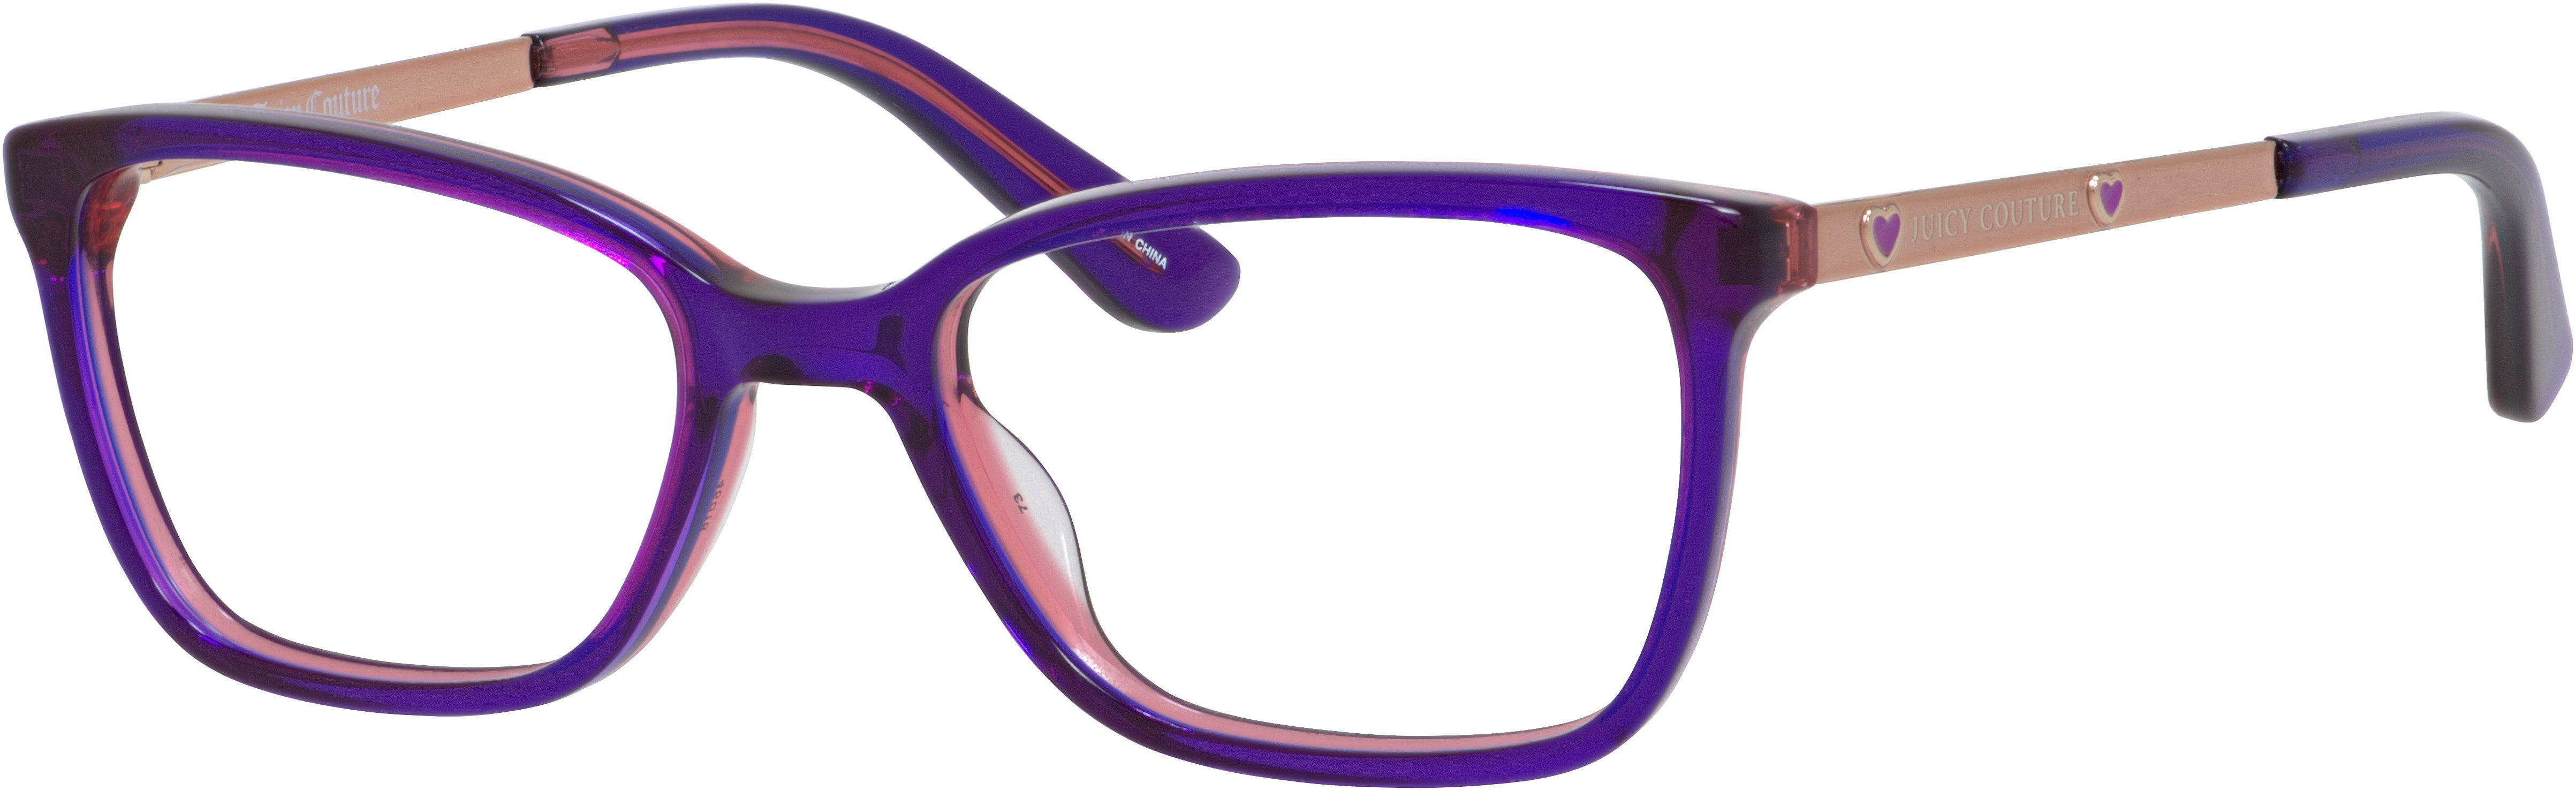 Juicy Couture Juicy 929 Square Eyeglasses 0S1V-0S1V  Pink Violet (00 Demo Lens)